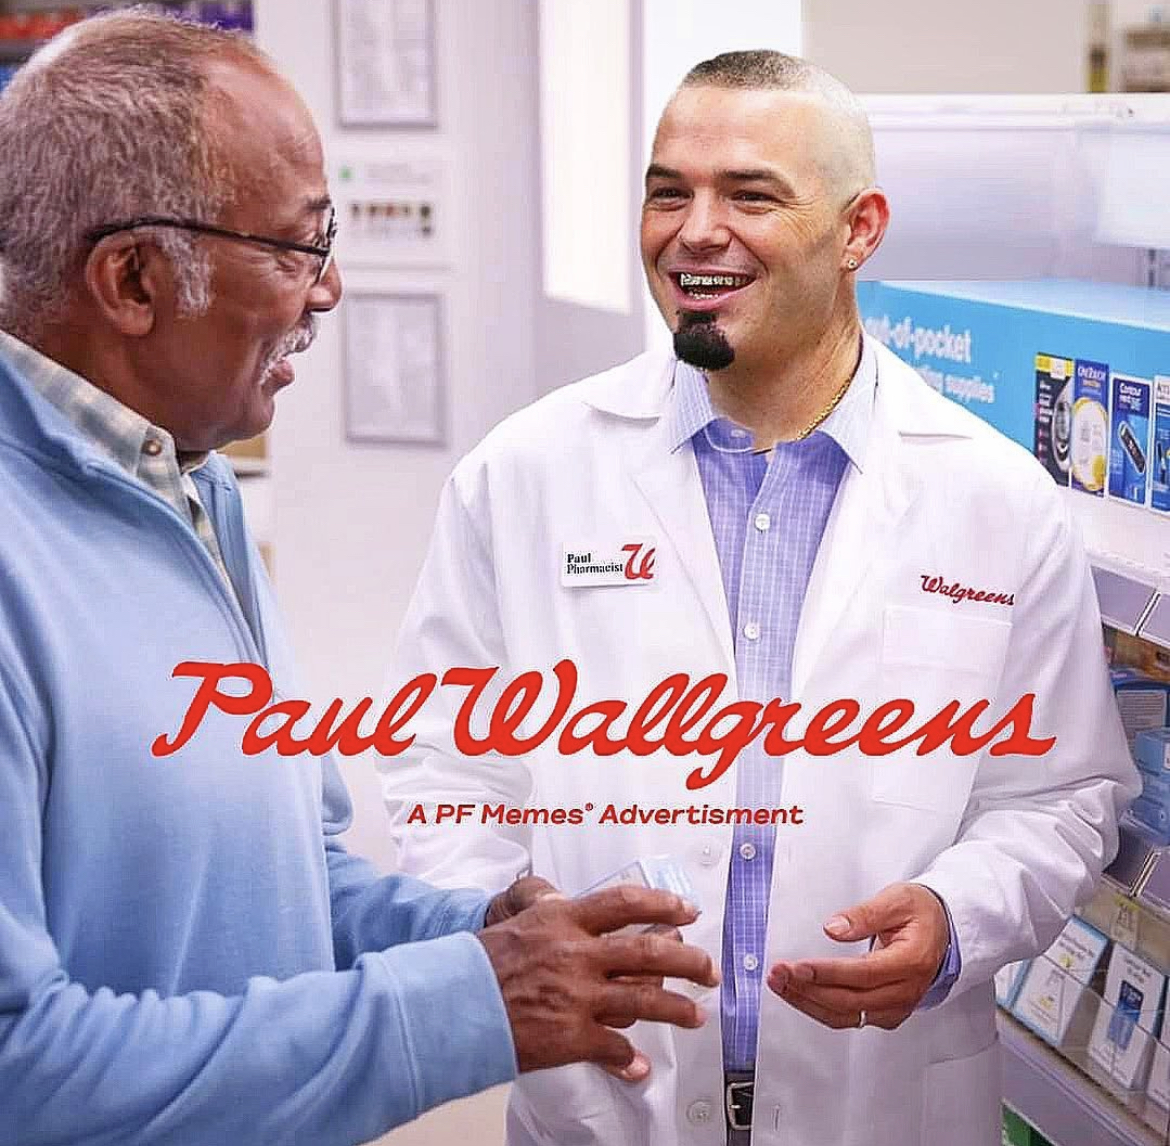 PFMemesChinaBistro Memes - Kom W Nar pocket supples Walgreens Paul Wallgreens Apf Memes Advertisment